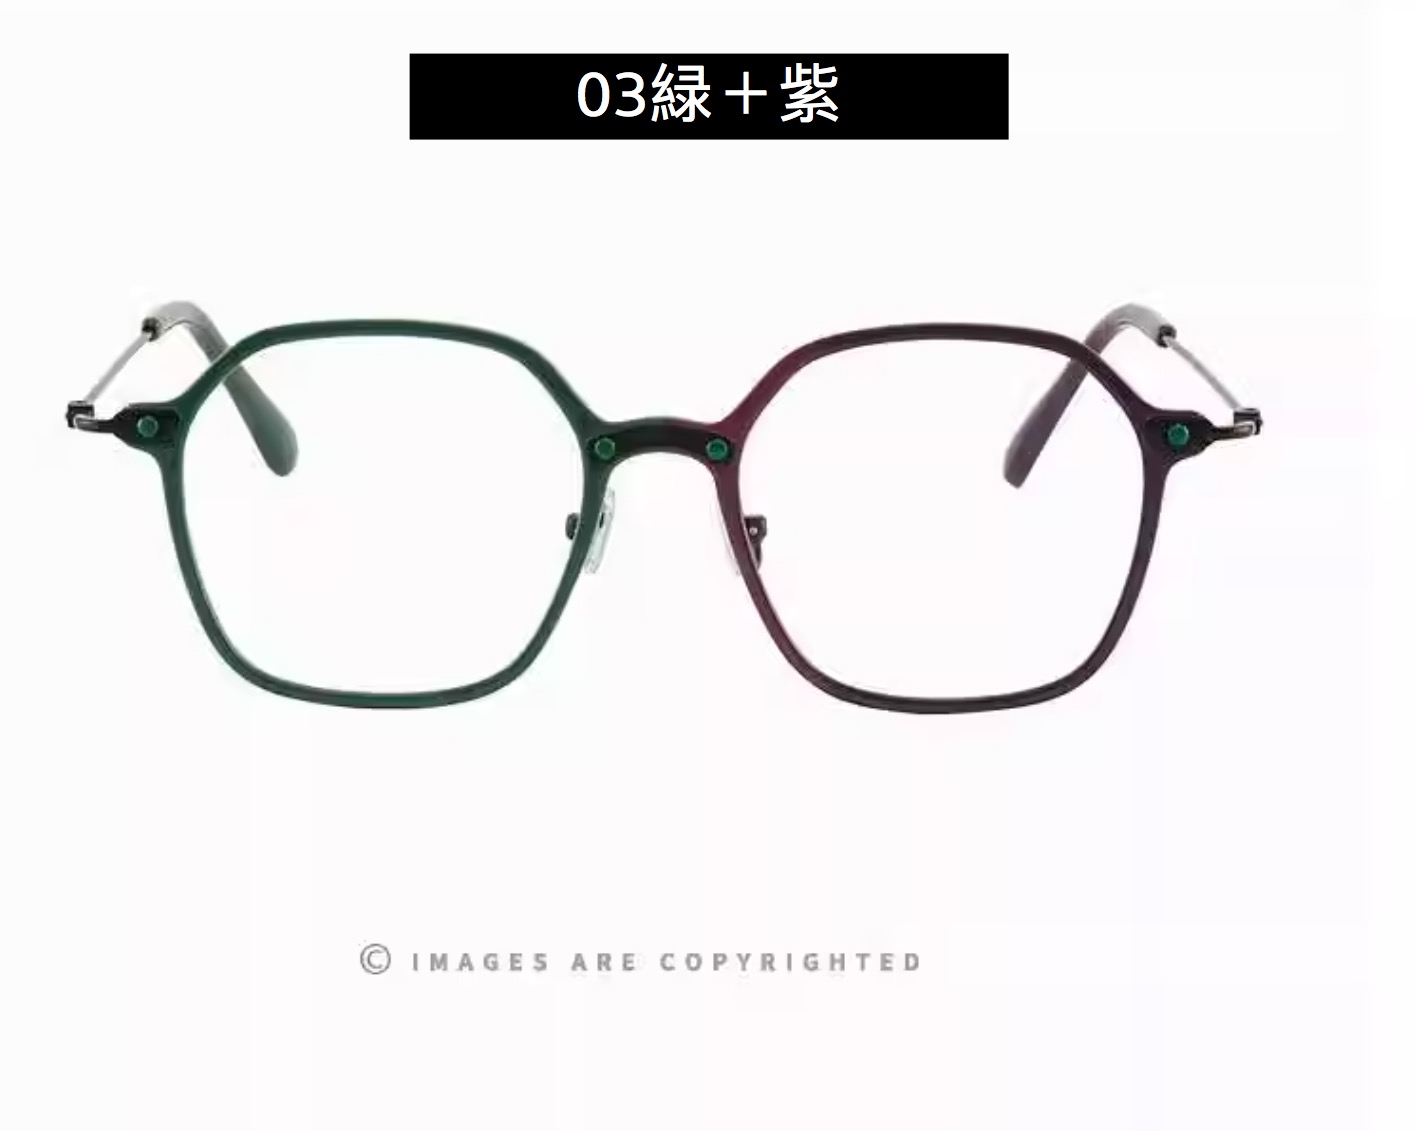 日本個性的伊達メガネ ブランド多角形度なしレンズ可愛いメガネ フレーム カタログ